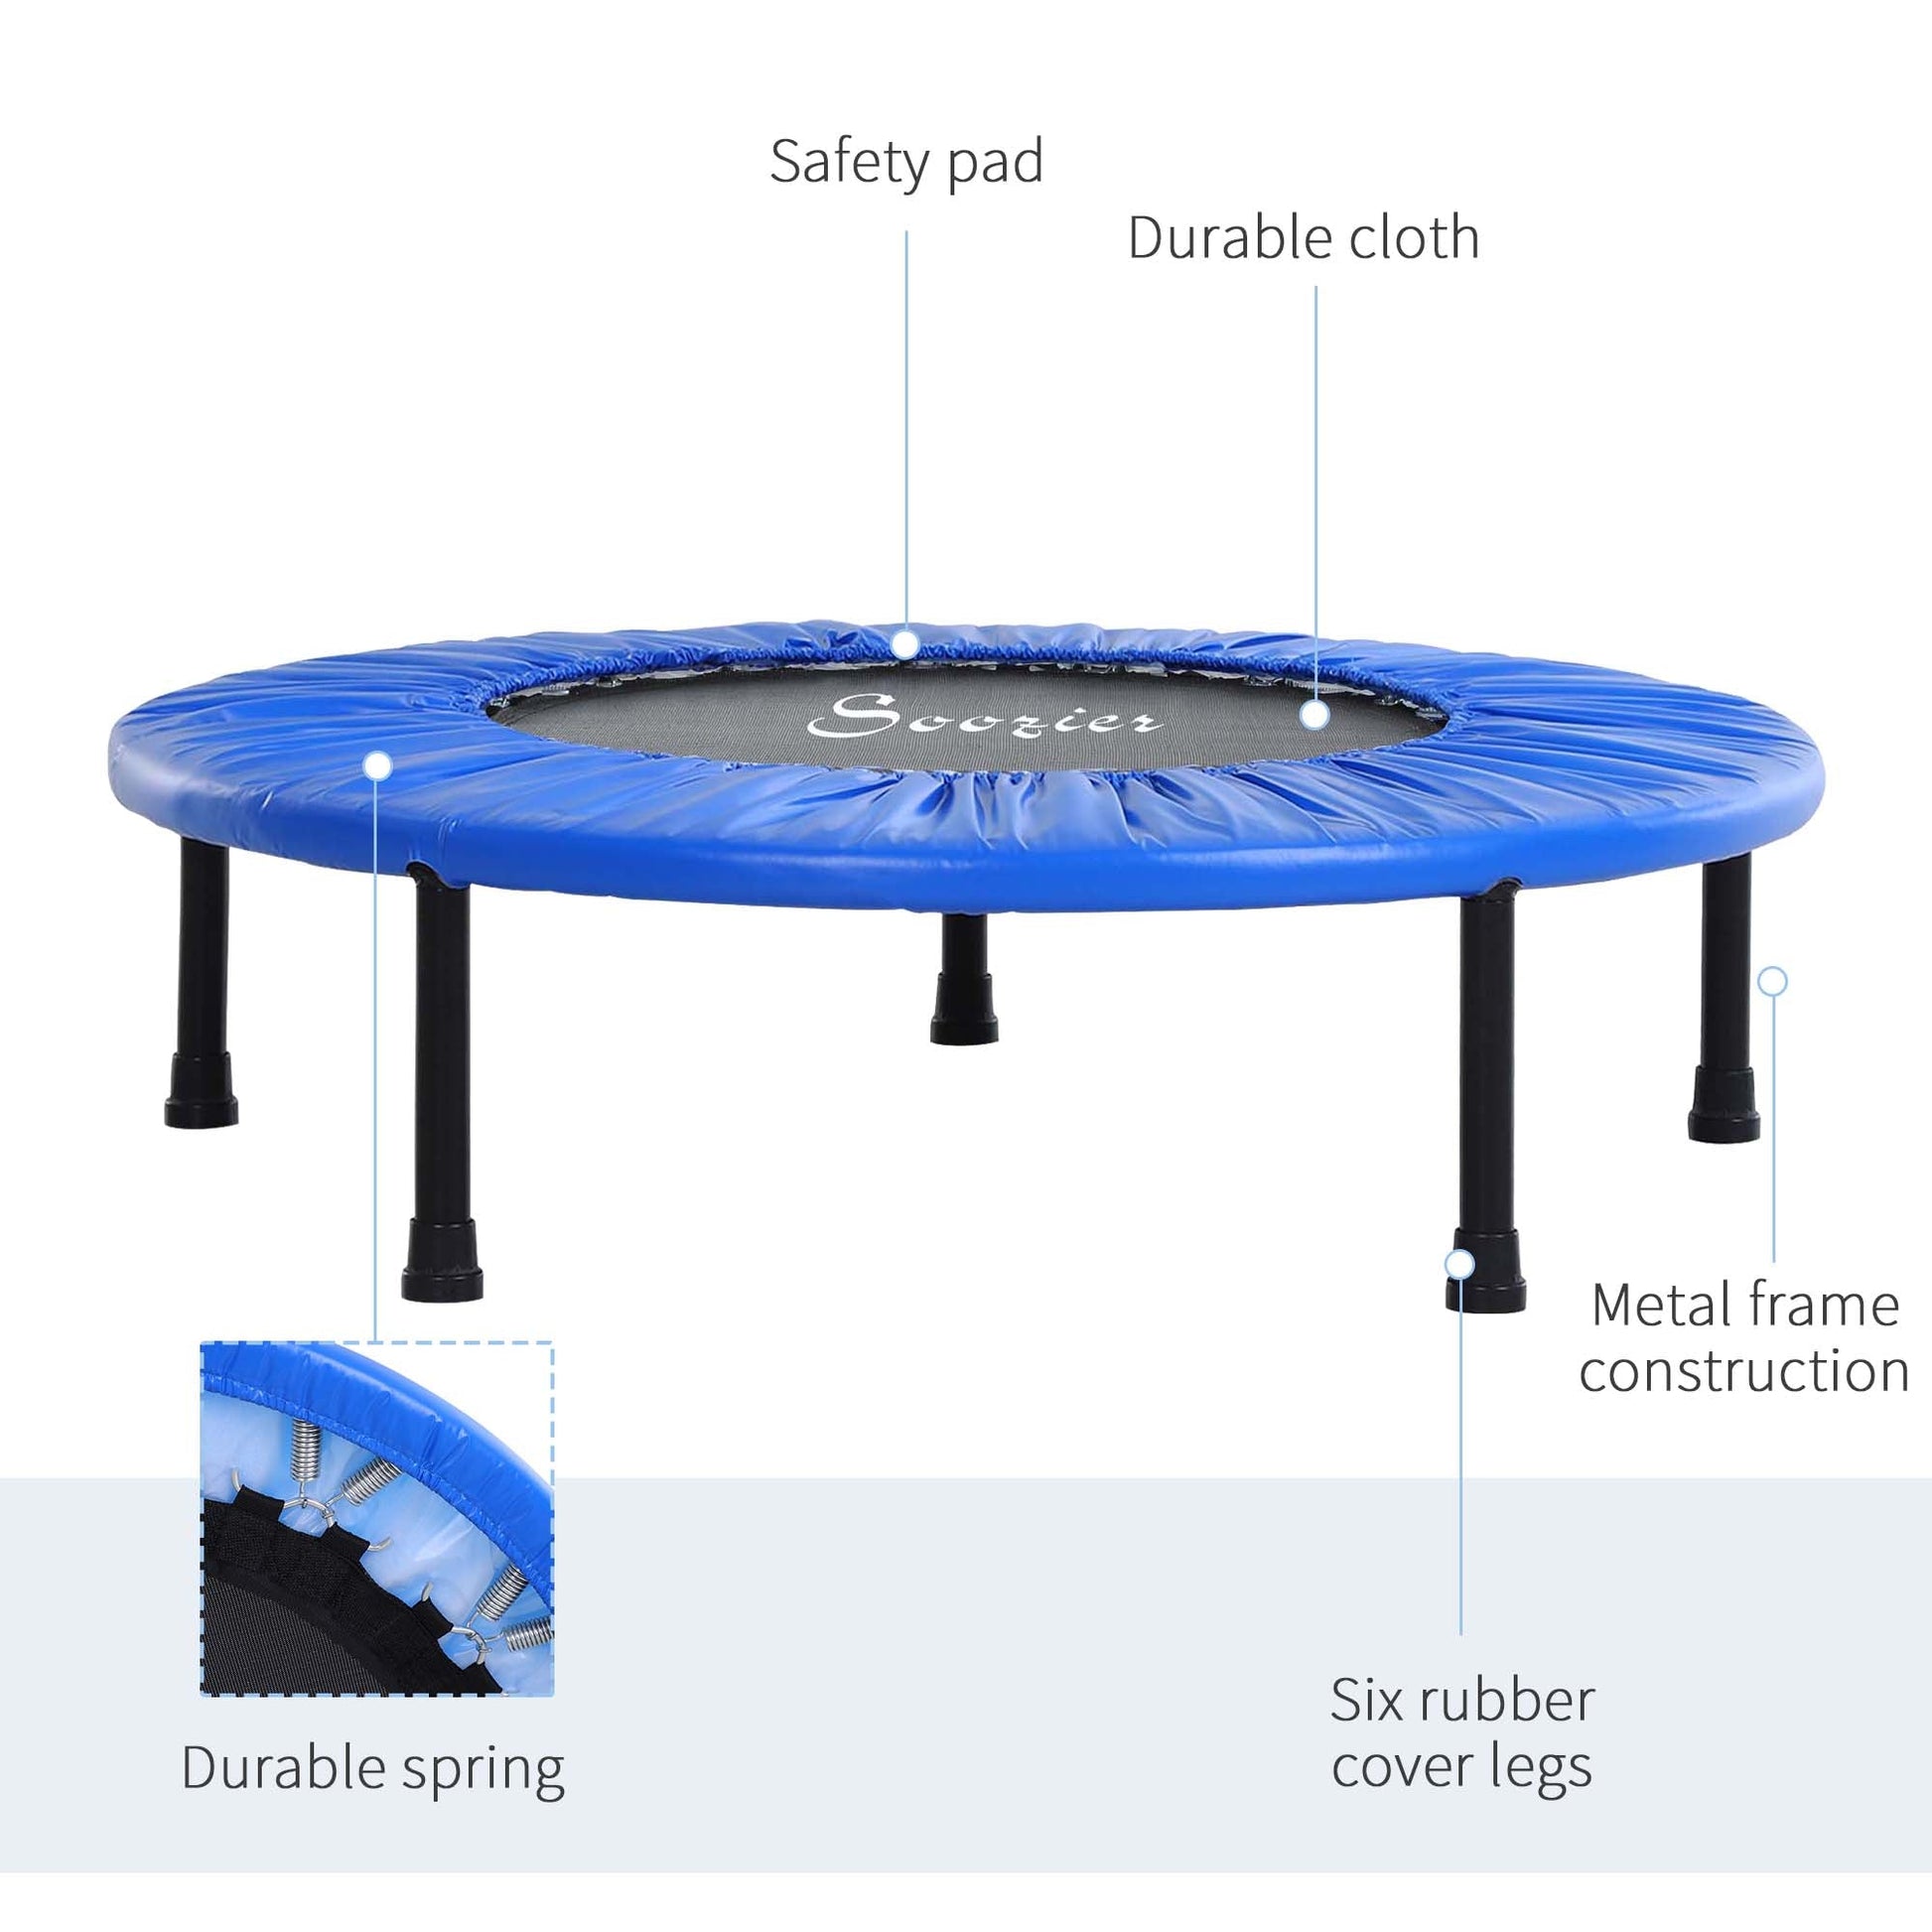 Φ38” Foldable Mini Fitness Trampoline Home Gym Yoga Exercise Rebounder Indoor Outdoor Jumper with Safety Pad, Blue/Black at Gallery Canada